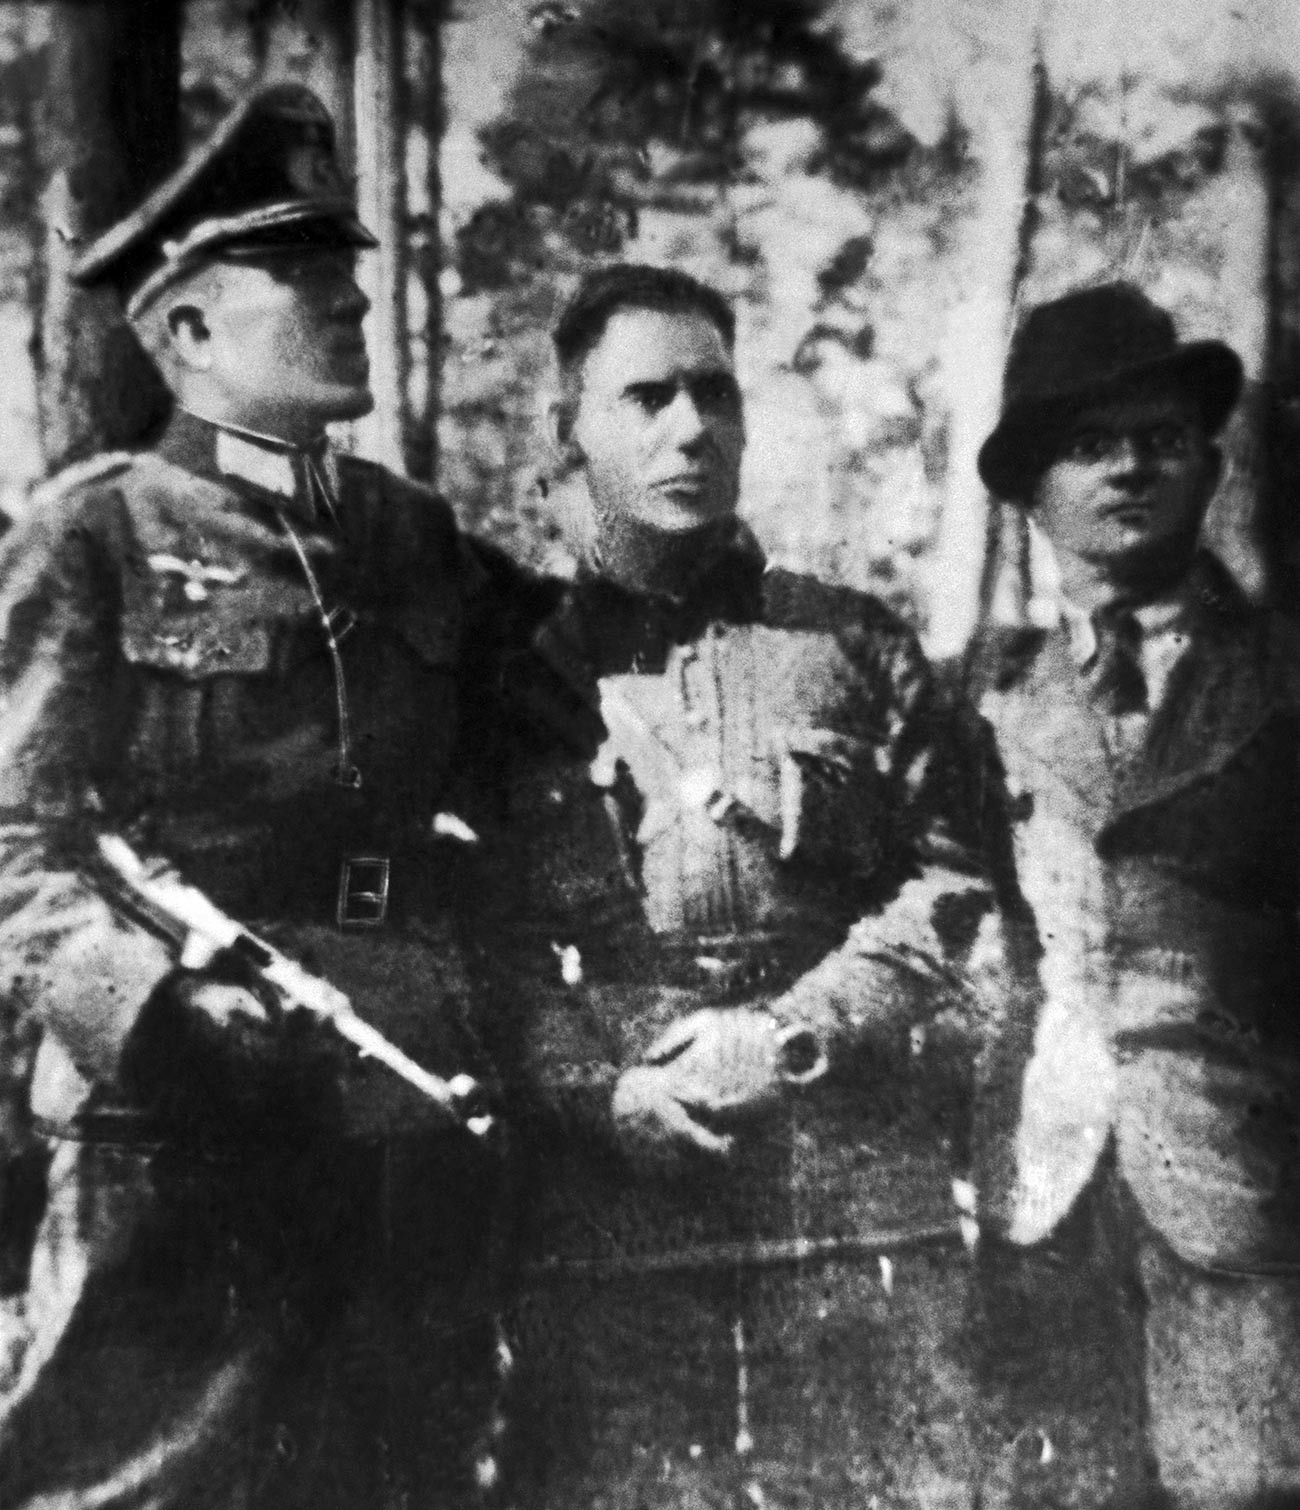 Николај Кузњецов у немачкој униформи (лево), комесар партизанског одреда „Победници“ С.Т. Стехов и обавештајац Н.А. Гњидјук